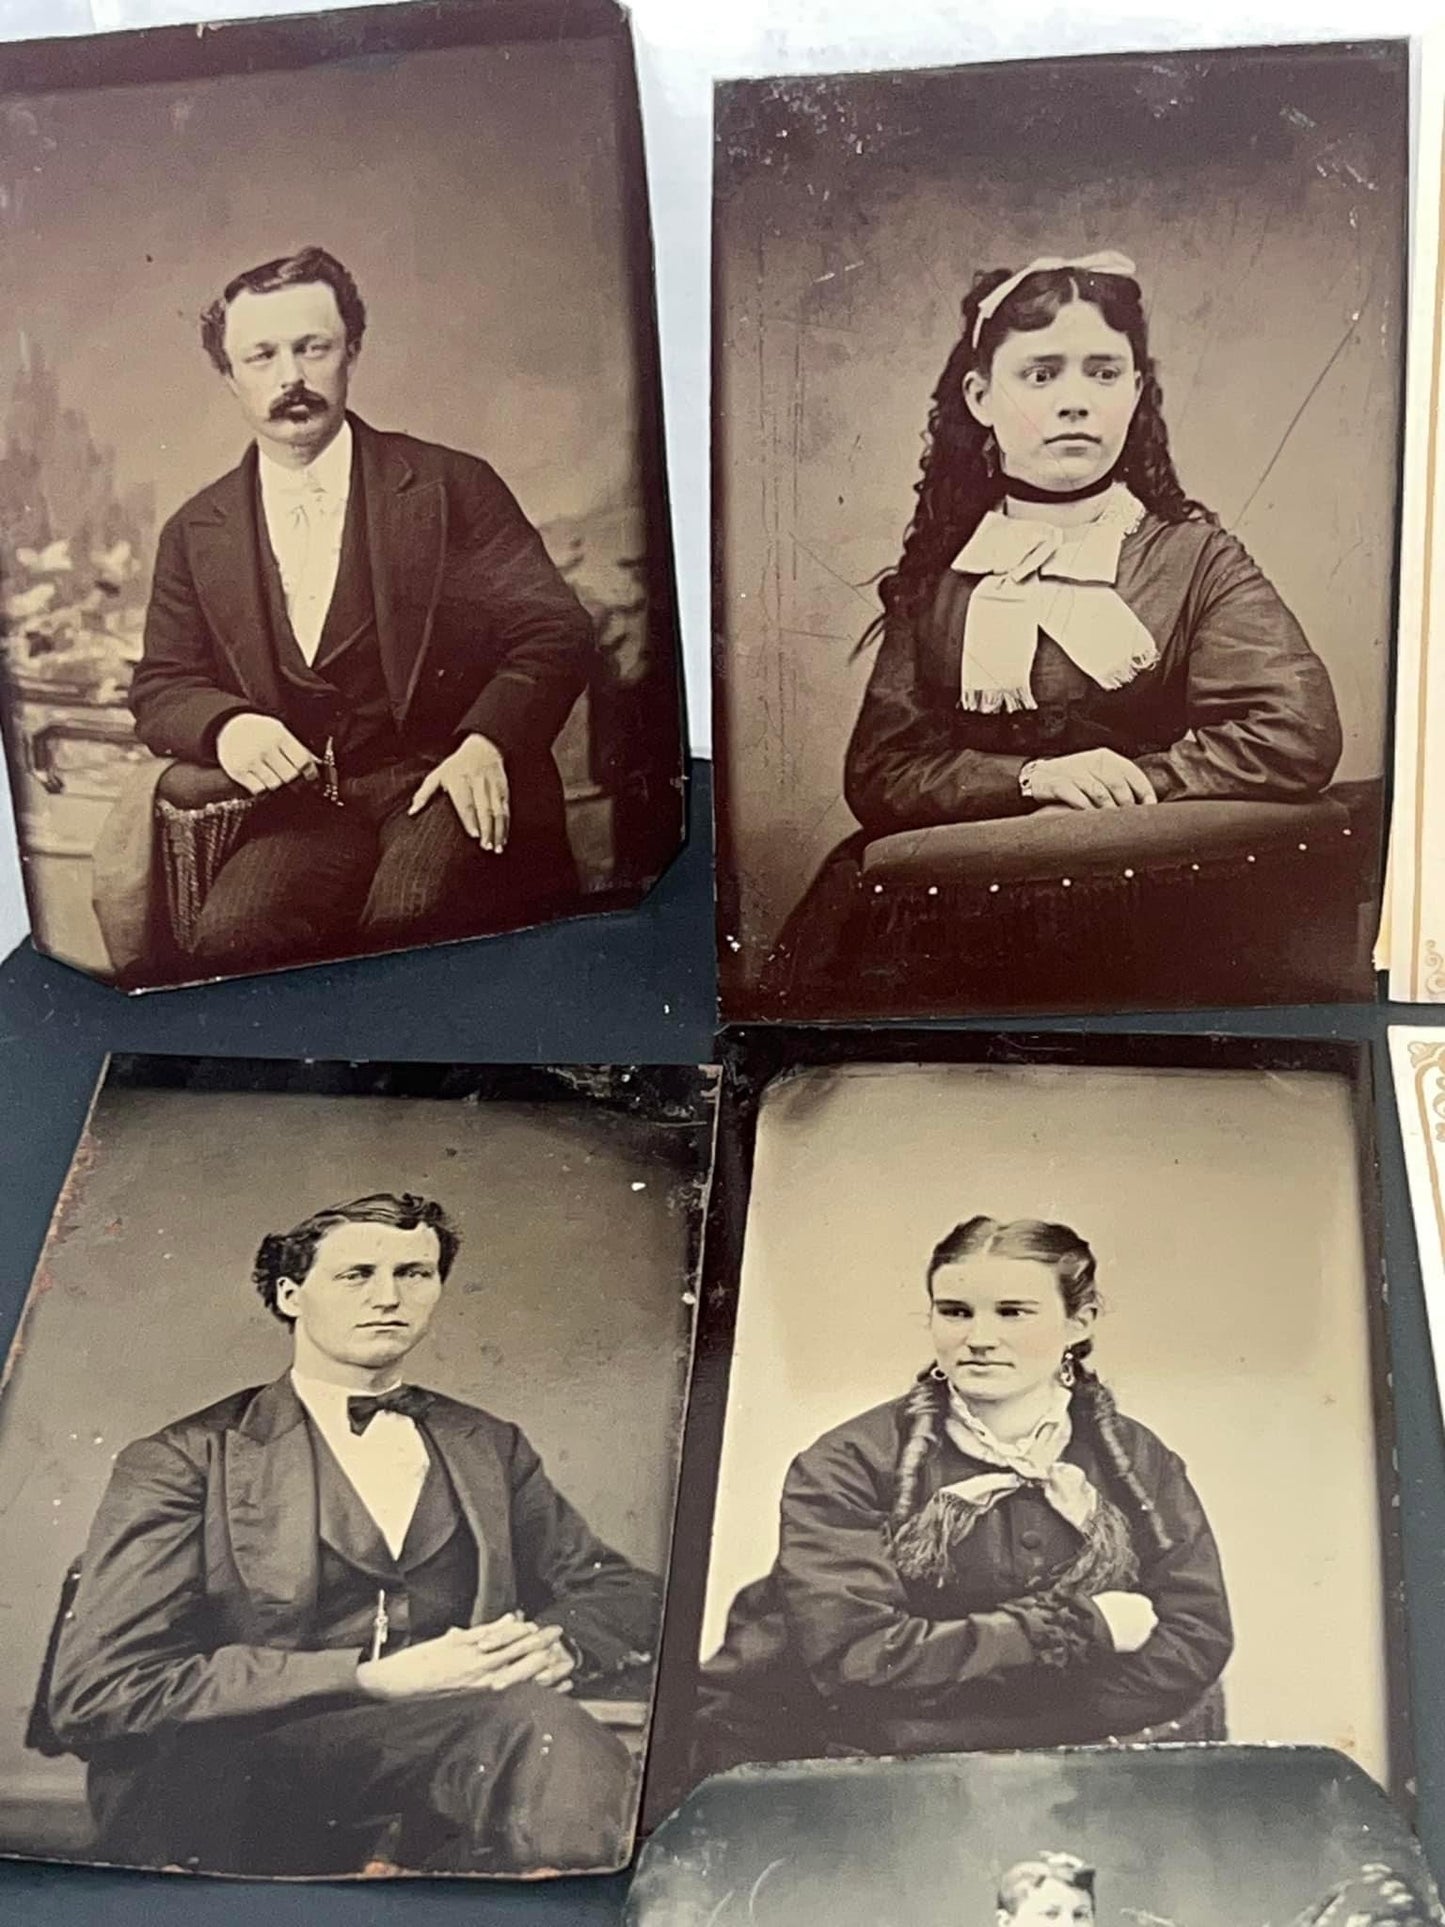 Antique Victorian tintype photo lot 1860-1870

26 tintype photos Jacksonville Illinois